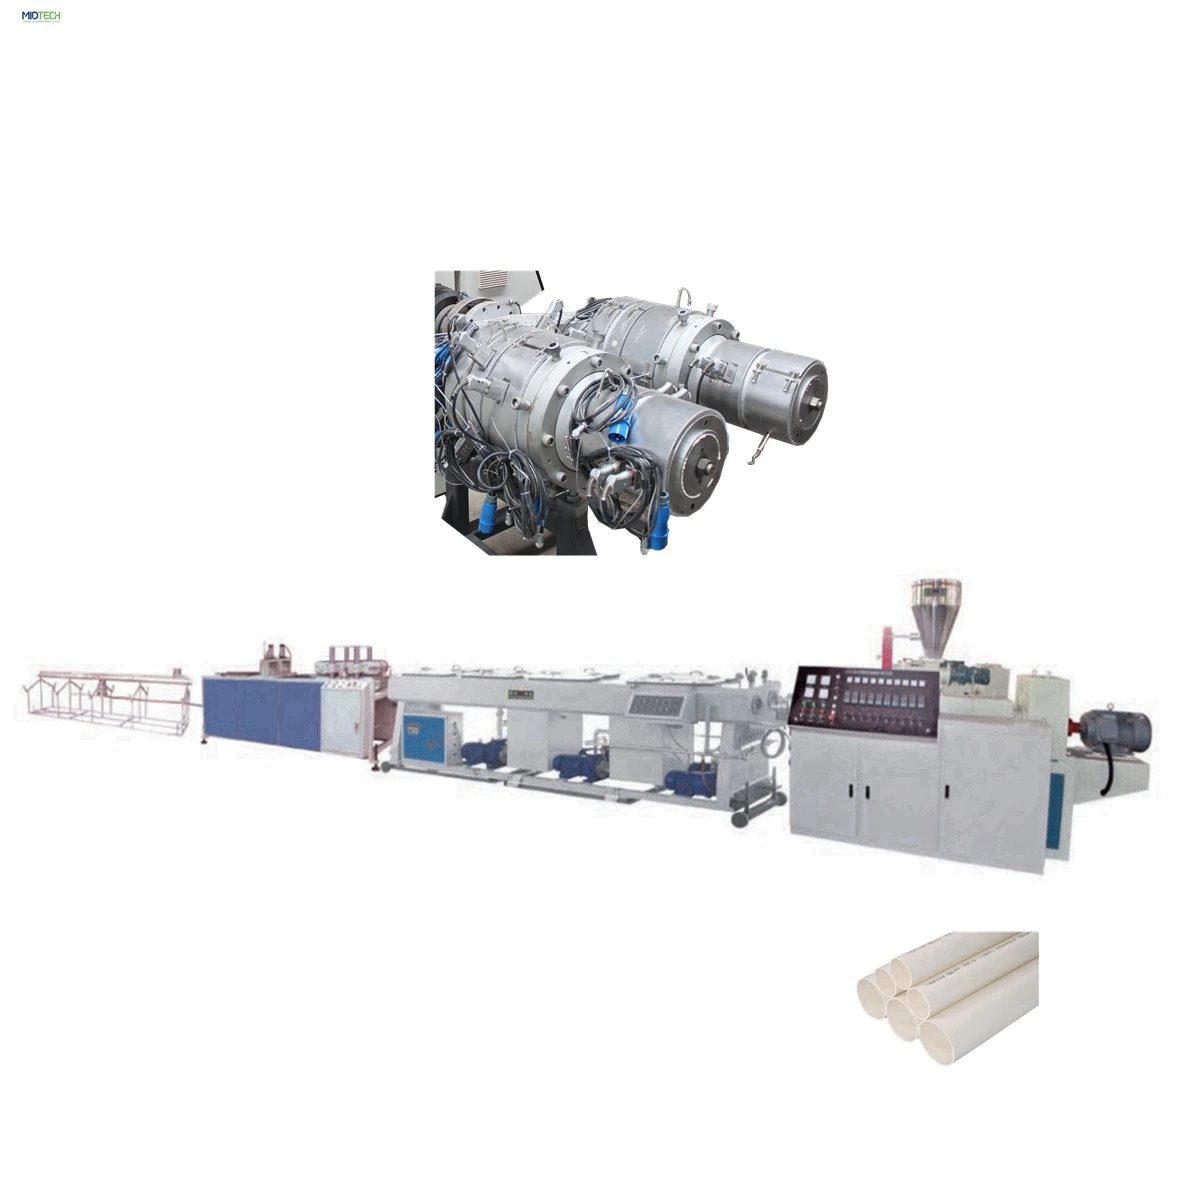 Tillverkningsmaskiner för tillverkning av pvc-rör med två munstycken / produktionslinjemaskiner för dubbla pvc-ledningar